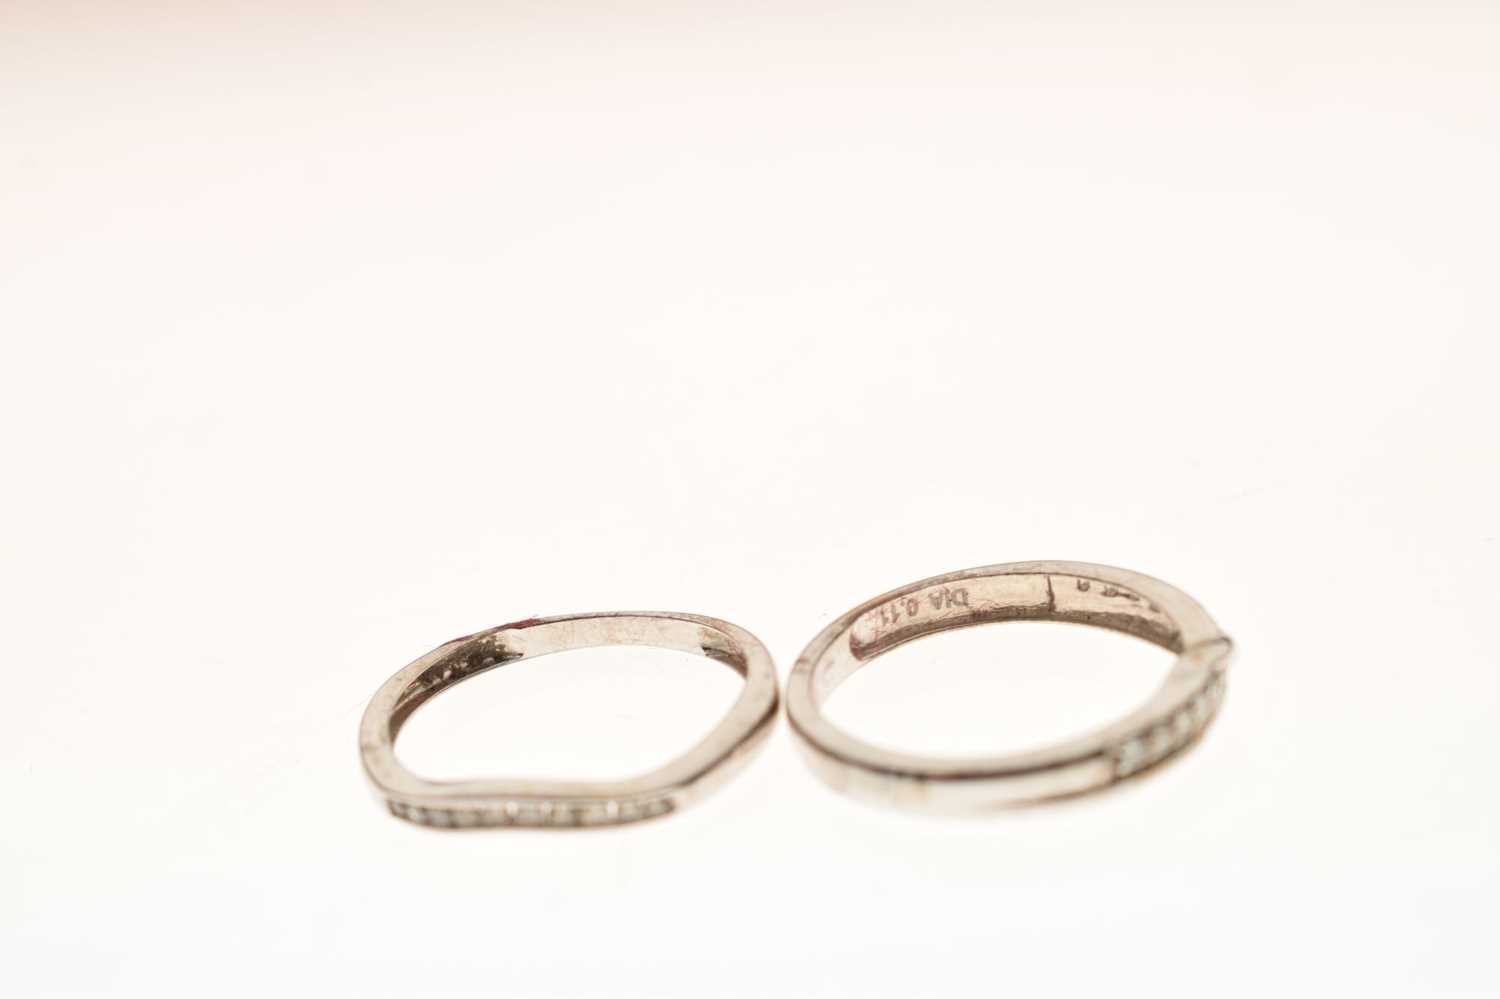 9ct white gold diamond set shaped wedding ring - Image 5 of 6